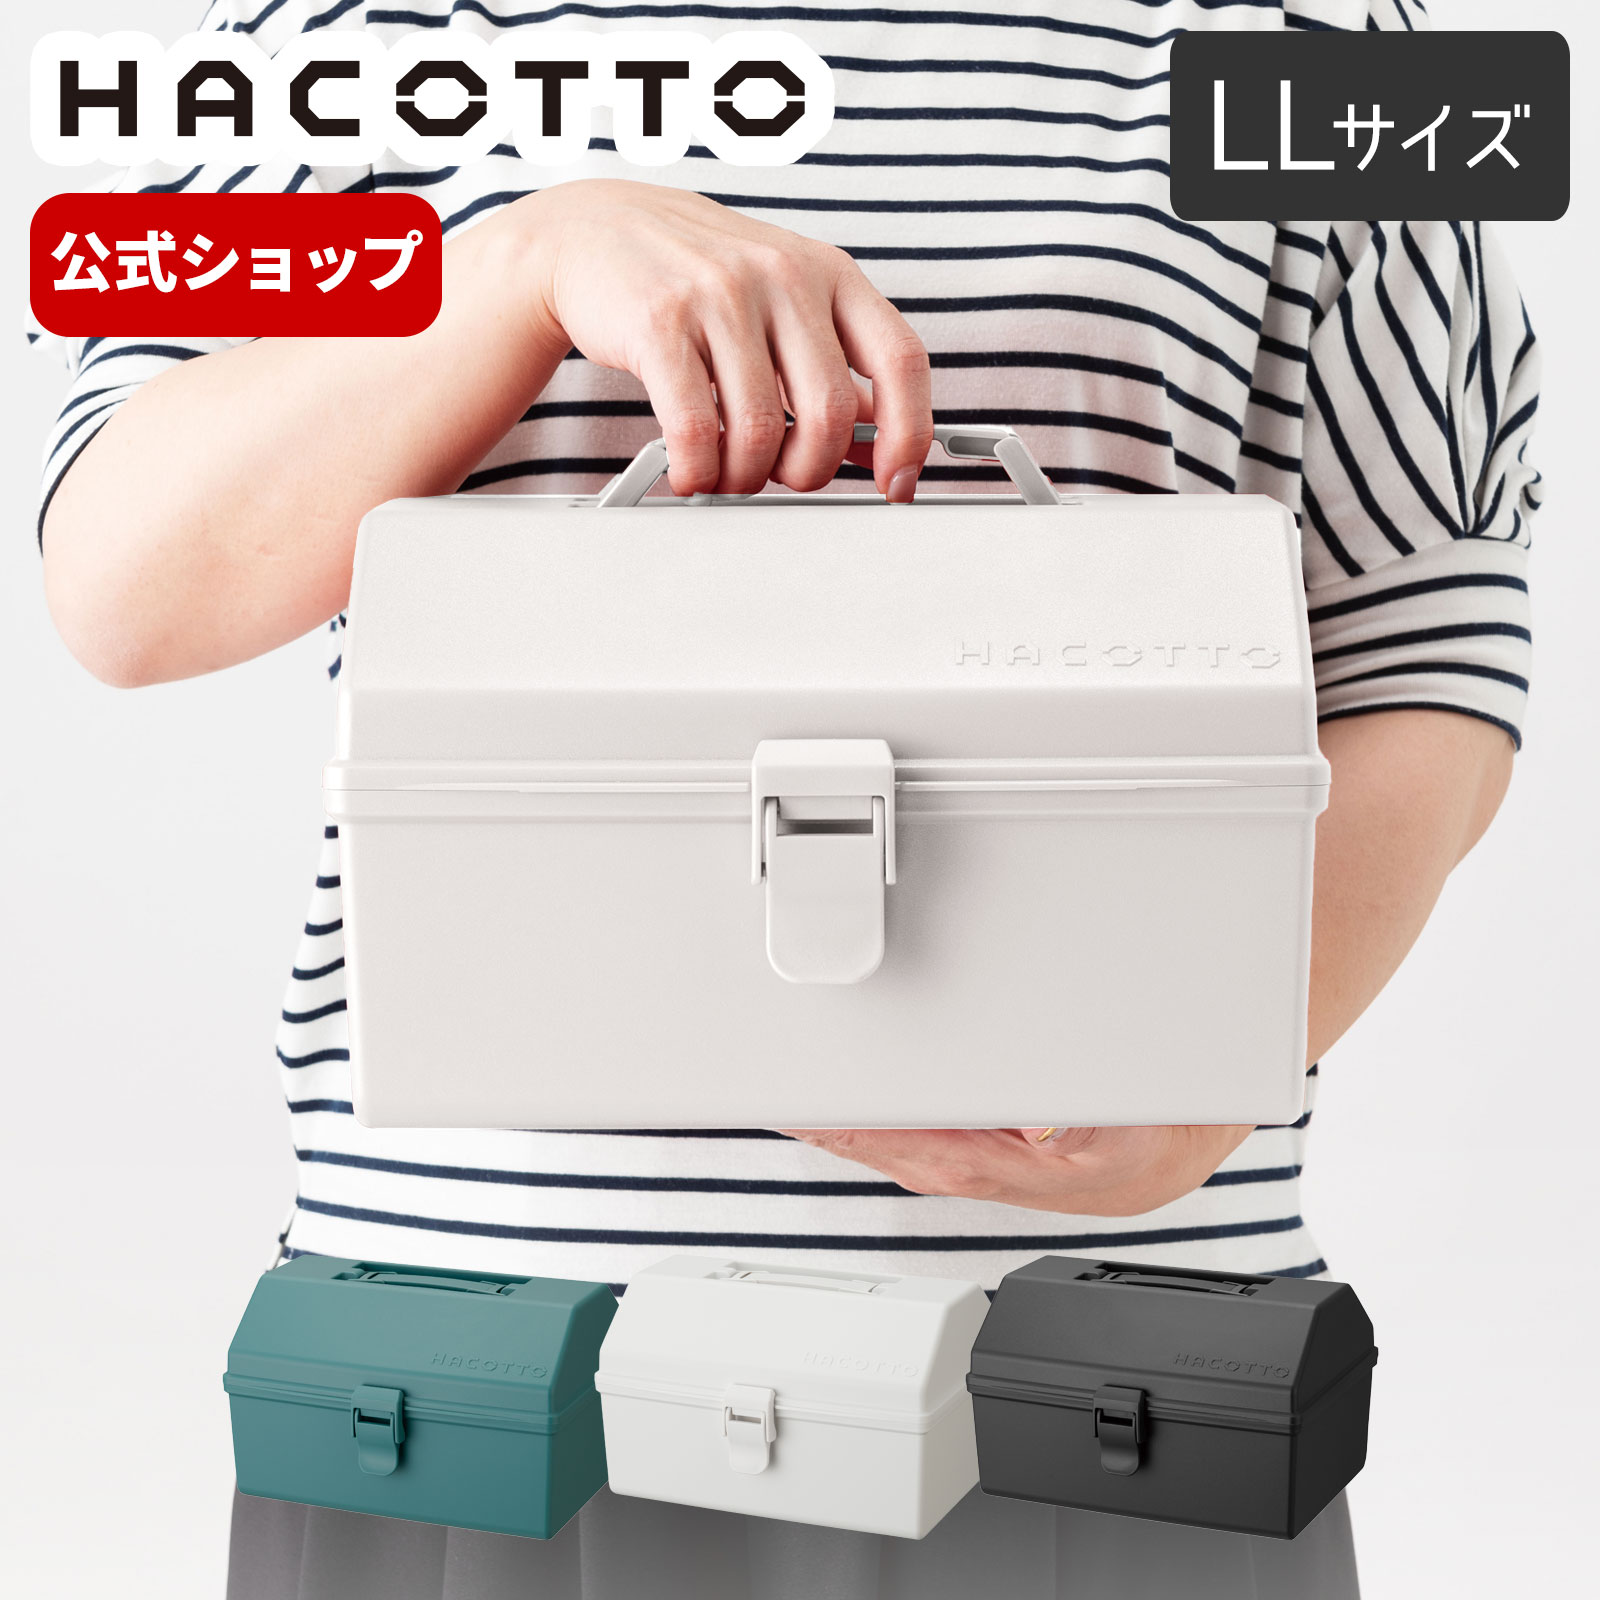 楽天市場】ハコット hacotto LL道具箱 ツールボックス 収納ボックス